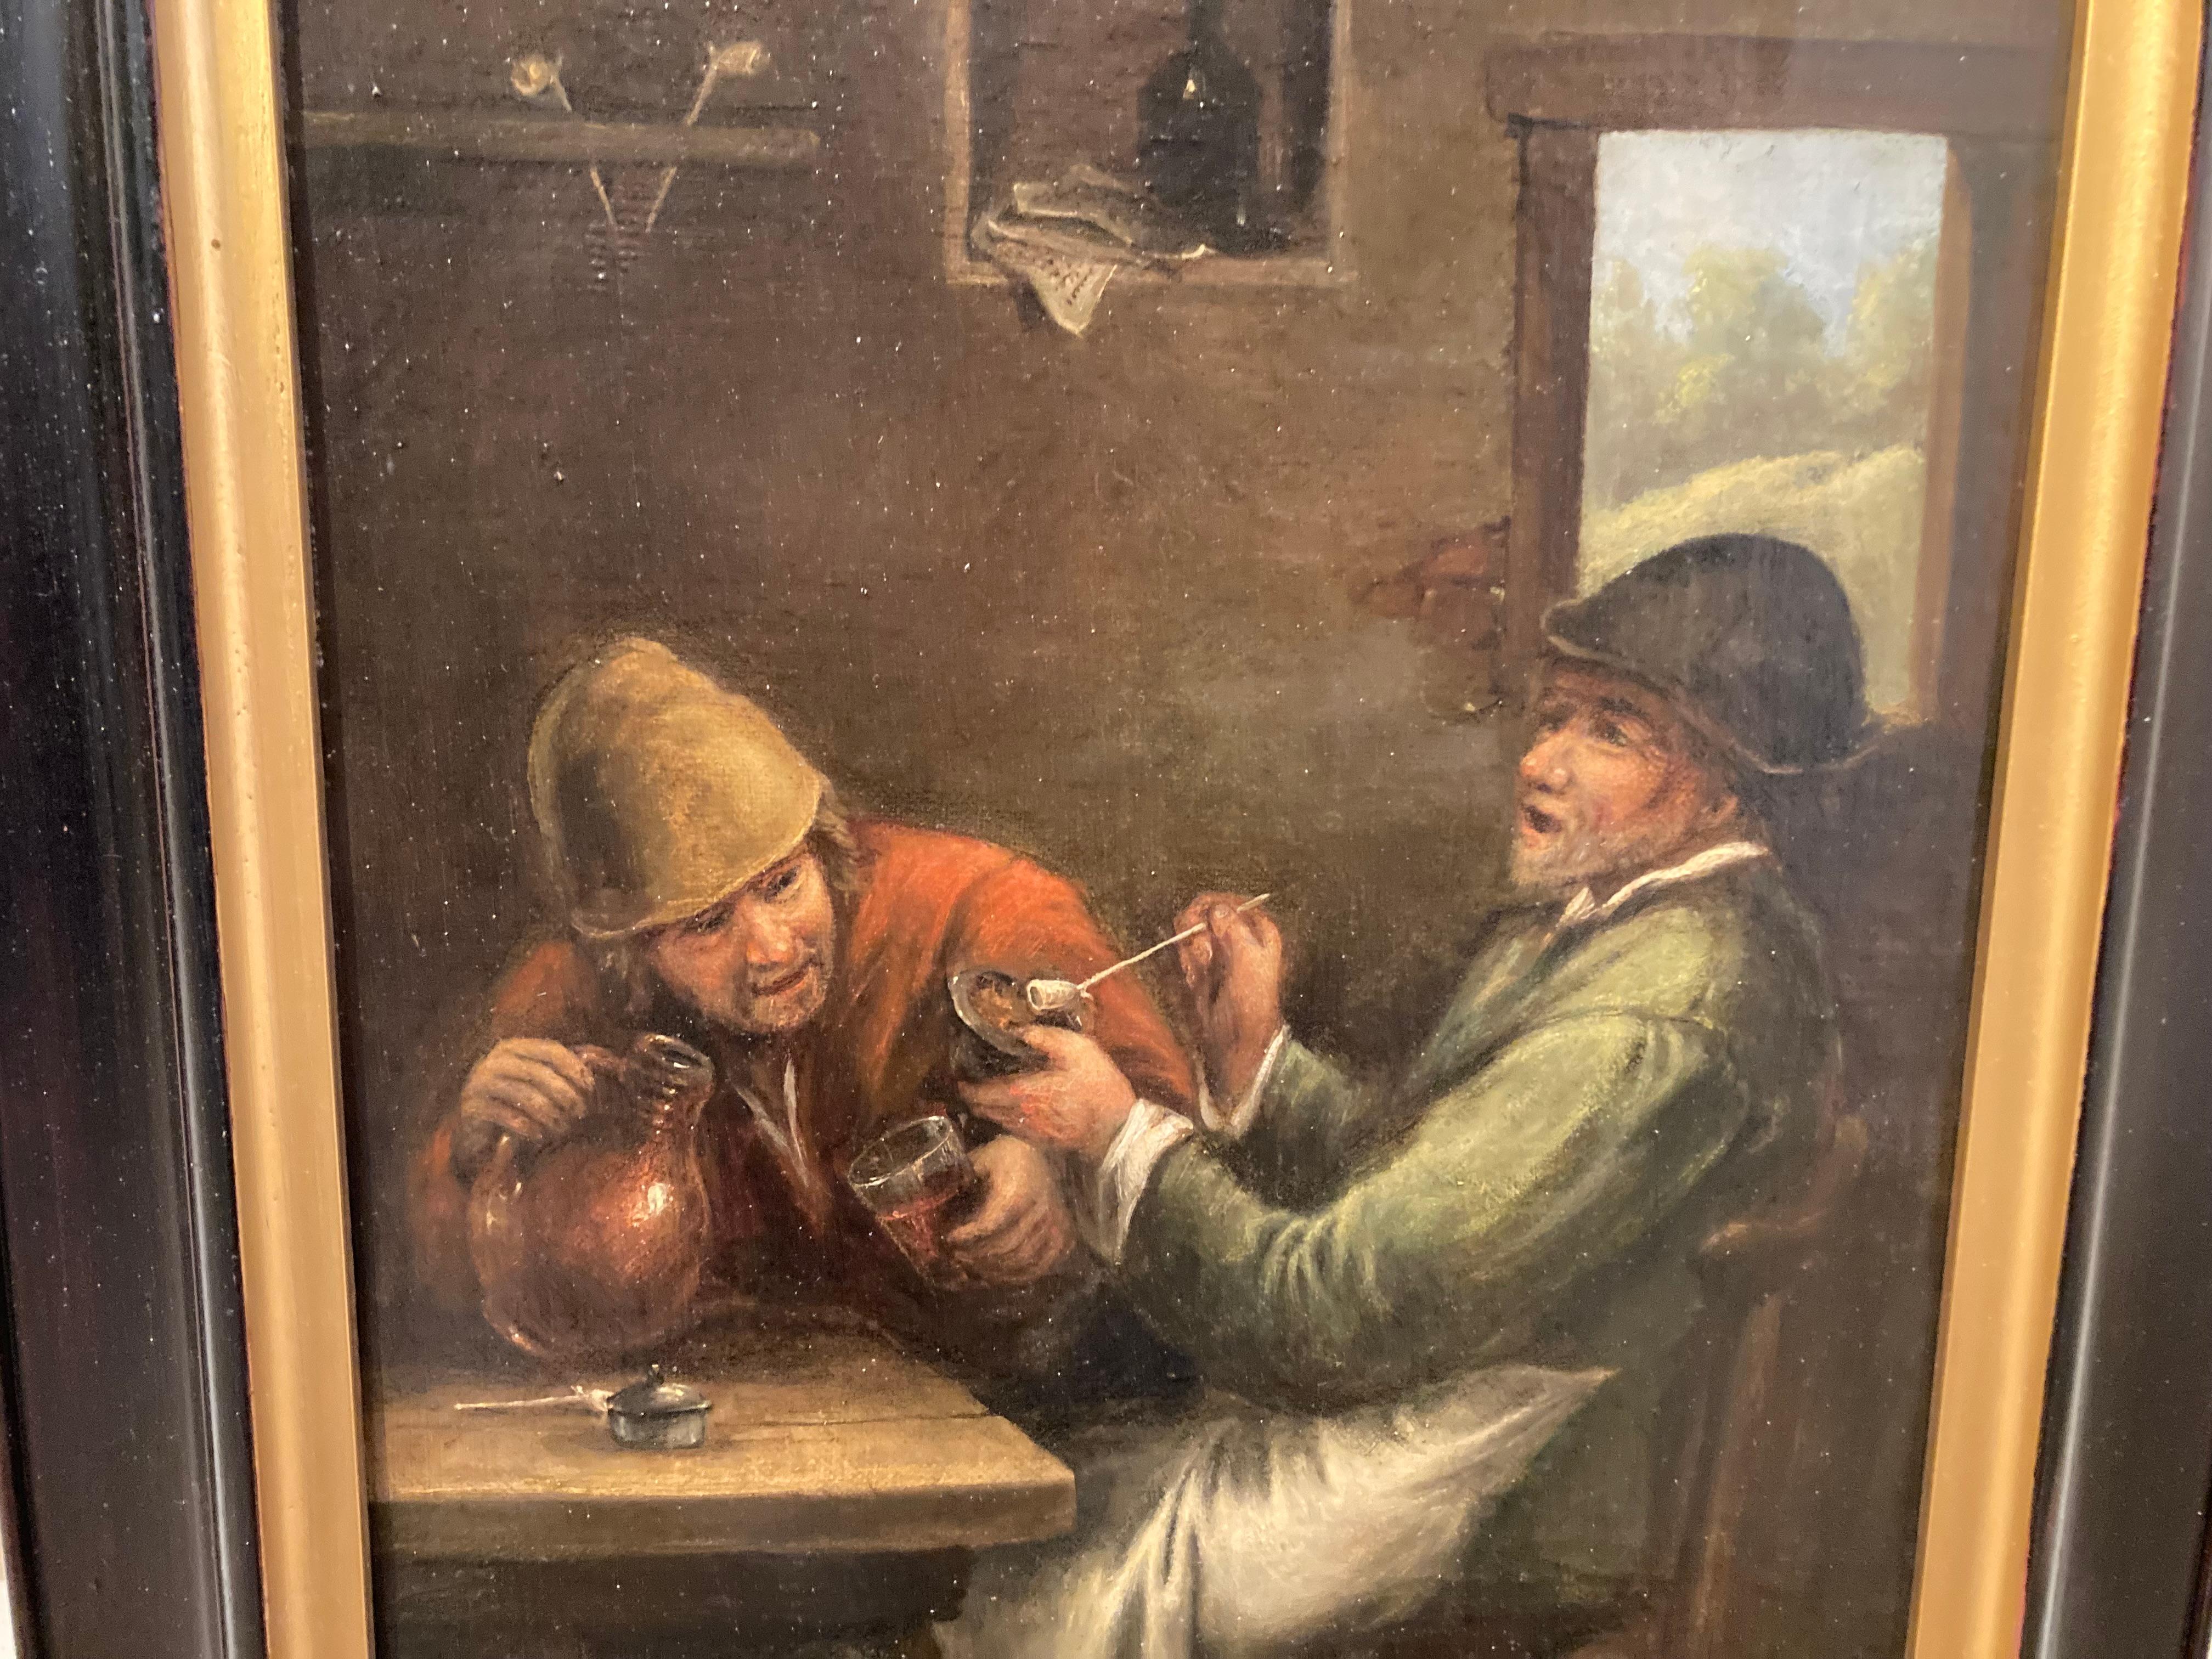 Nach Heemskerck, Zwei alte Männer siiting in einem Gasthaus, Getränkeszene, Alter Meister (Braun), Still-Life Painting, von Egbert Van Heemskerck the Elder